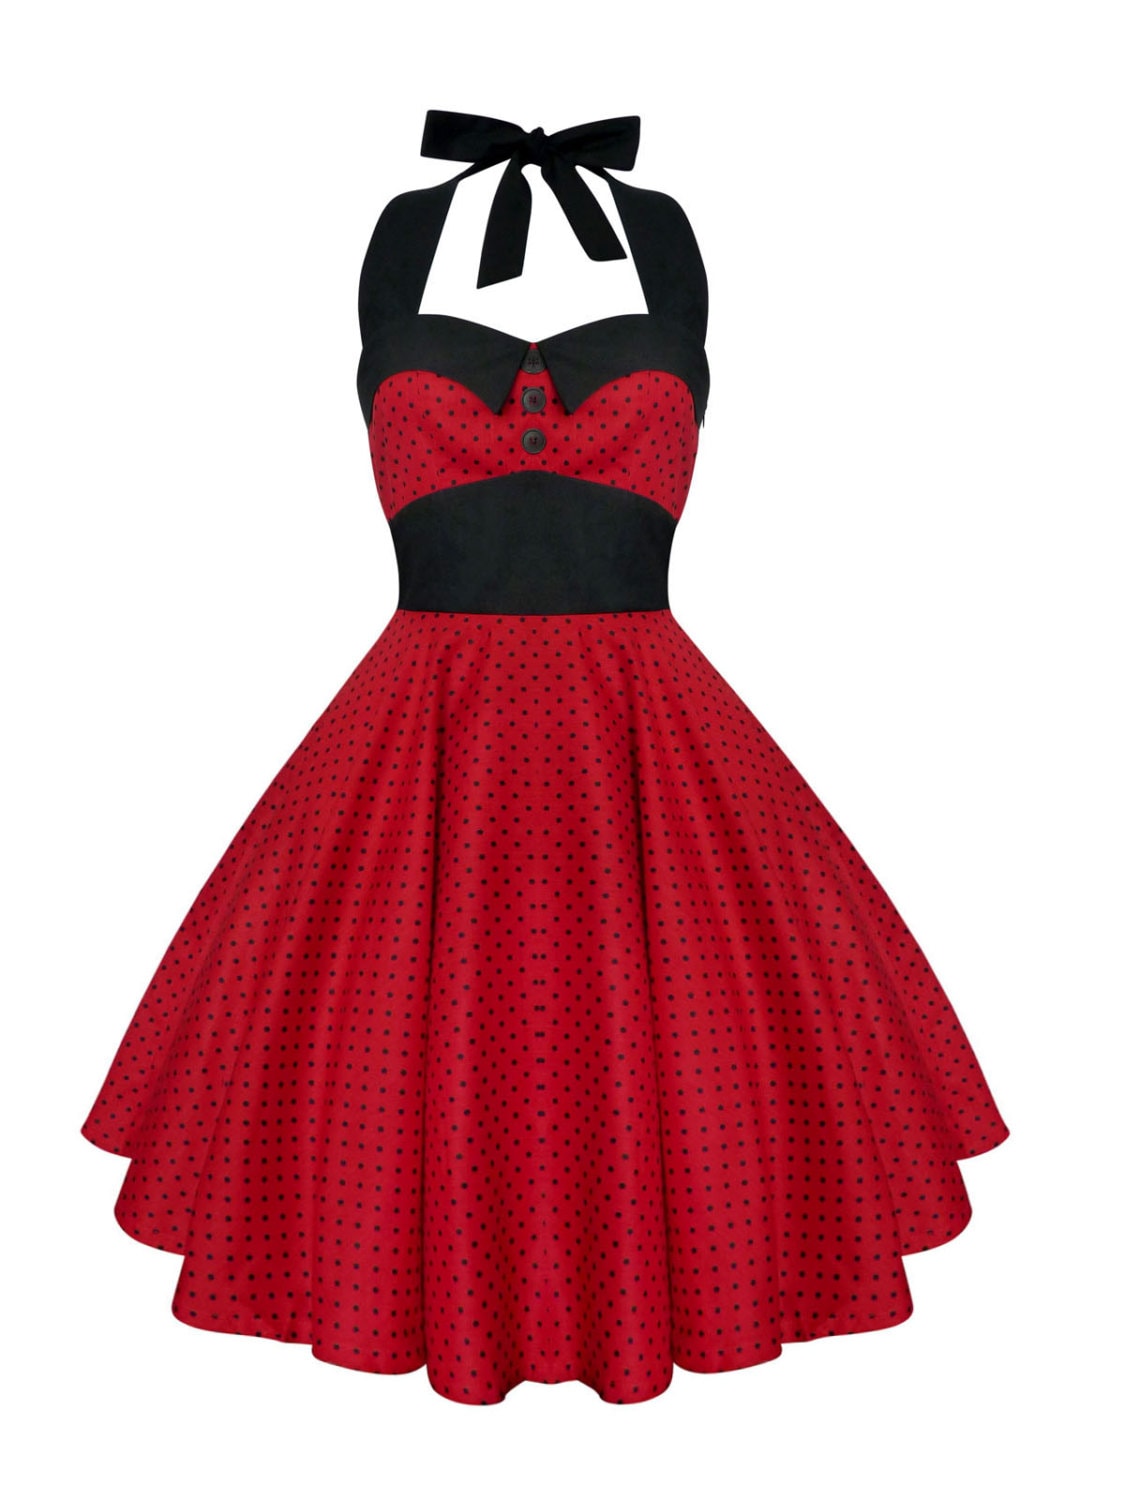 Rockabilly Red Christmas Dress Polka Dot by LadyMayraClothing